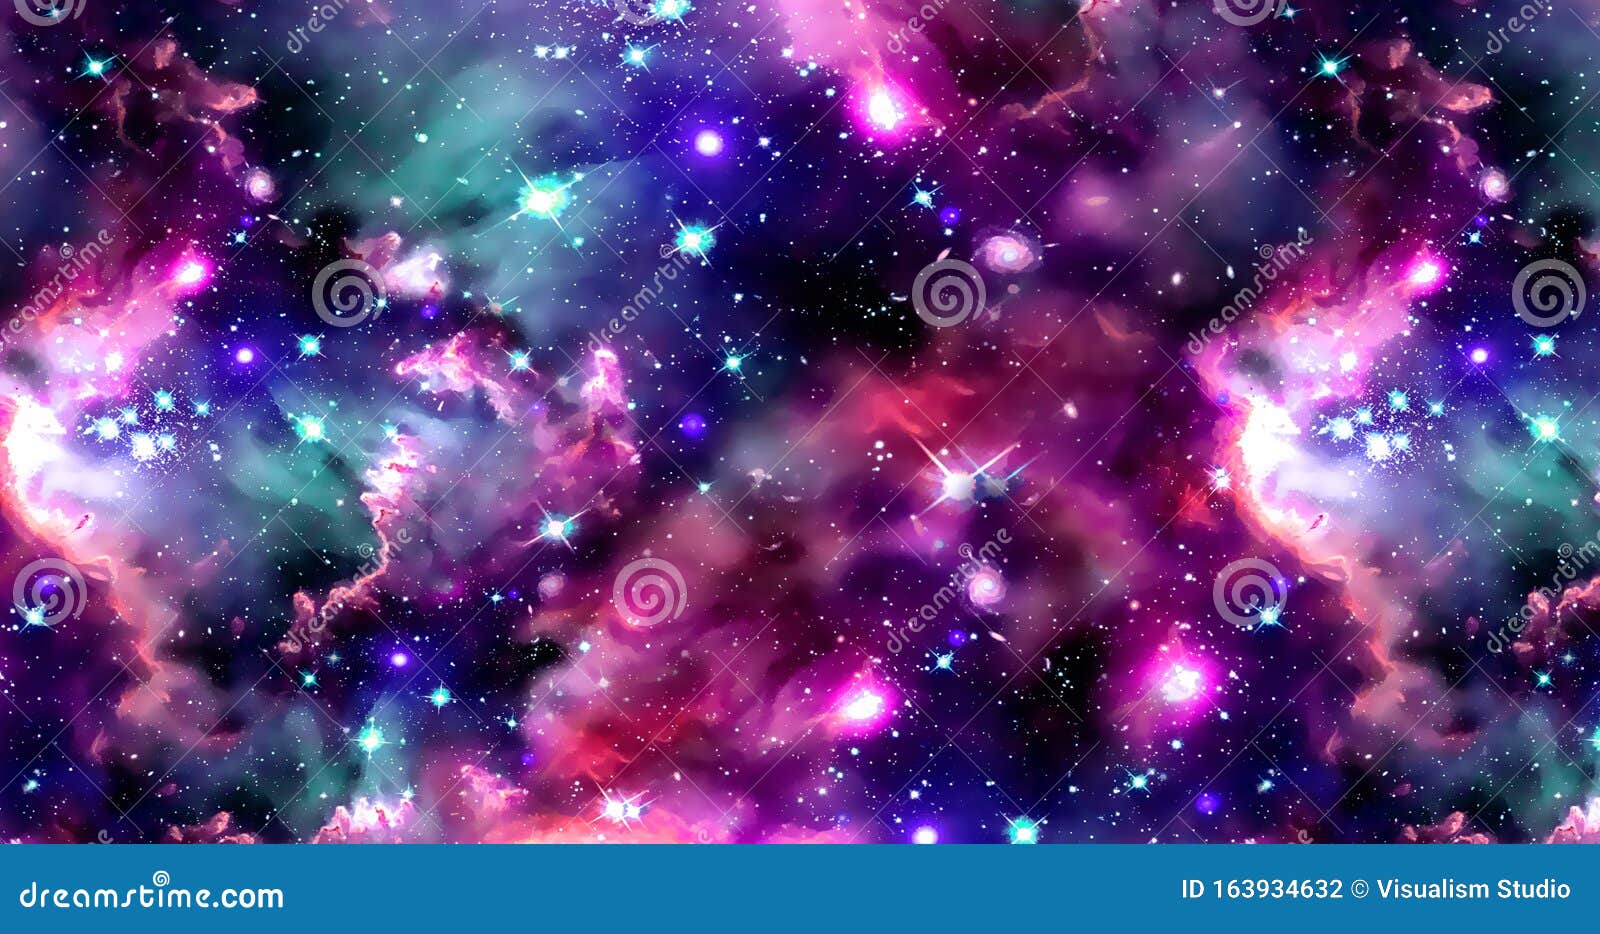 Bạn muốn có một hình nền thiên hà độc đáo và ấn tượng? Hãy tìm kiếm những hình ảnh thiên hà trừu tượng với ngôi sao và hành tinh đầy màu sắc. Với những gam màu tươi sáng và những khung cảnh kỳ lạ, bạn sẽ nhận ra rằng không còn gì tuyệt vời hơn khi được xem những hình nền đầy màu sắc về vũ trụ này.